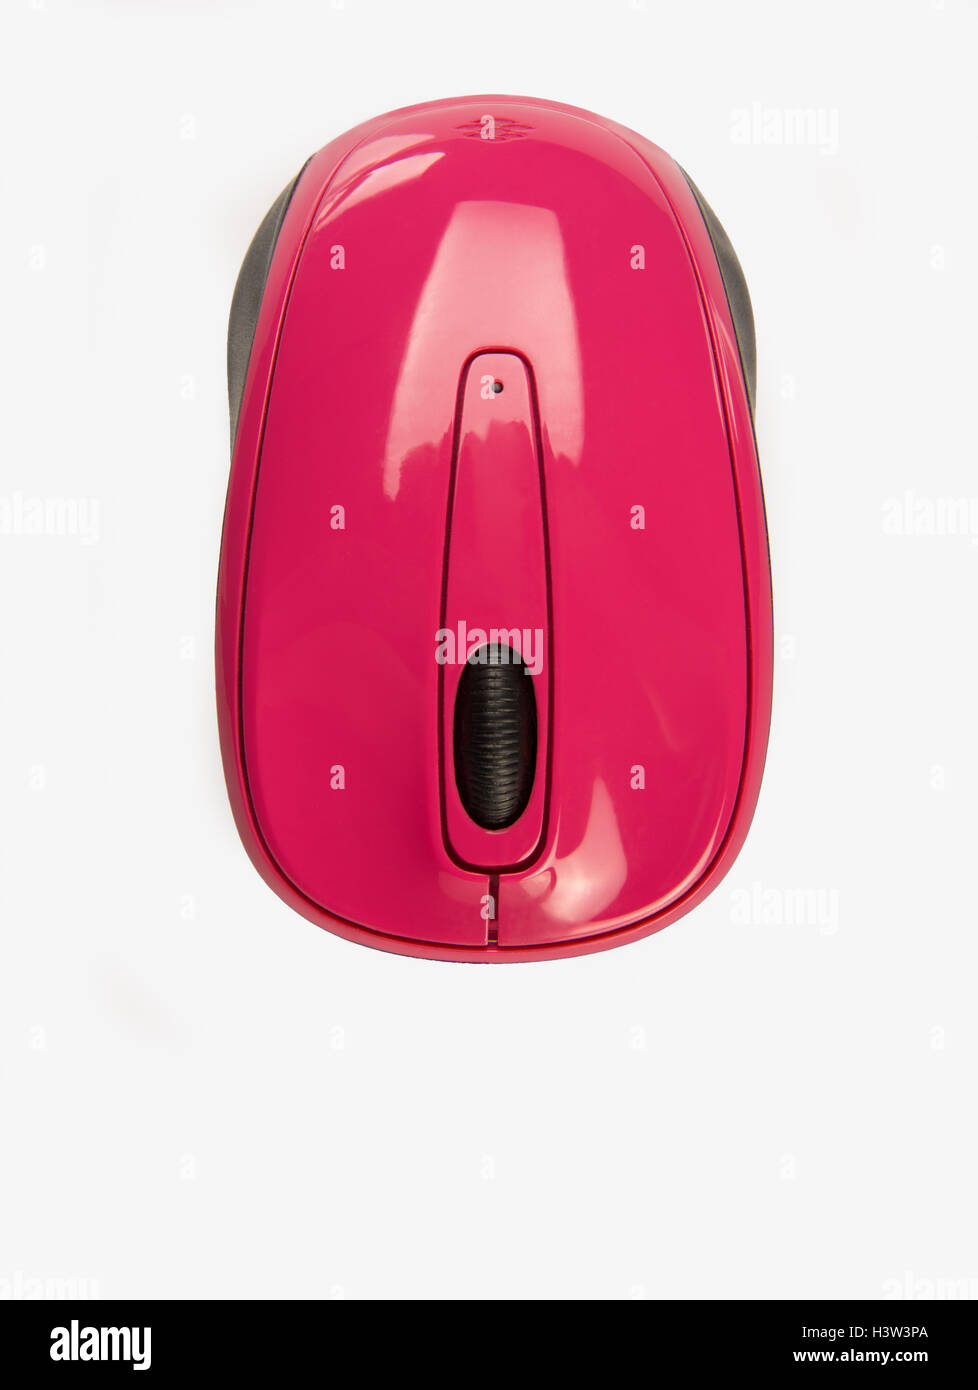 Petite souris sans fil pour ordinateur portable portable rose Banque D'Images